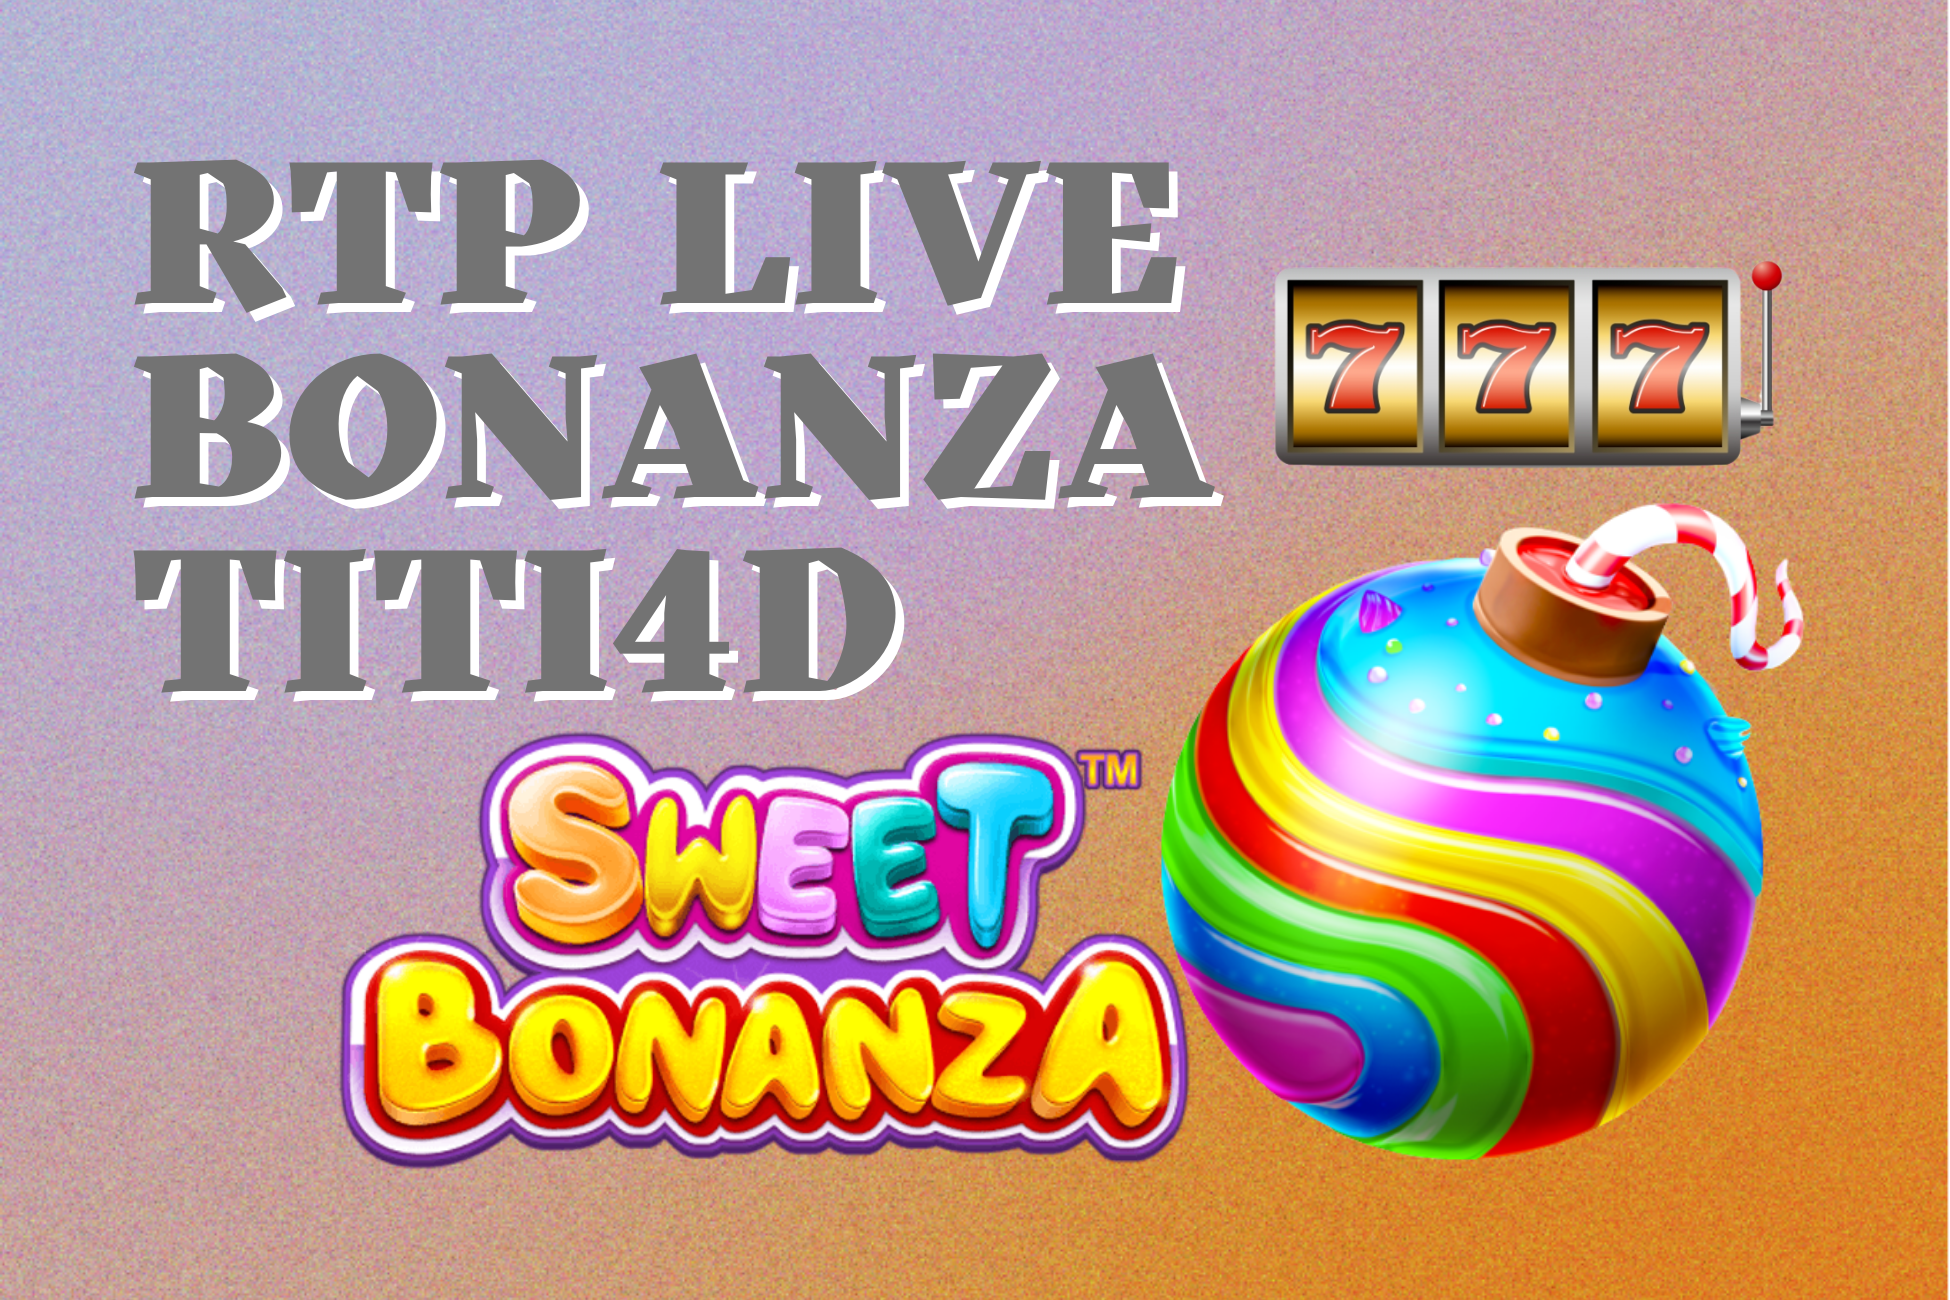 RTP Live Bonanza TITI4D